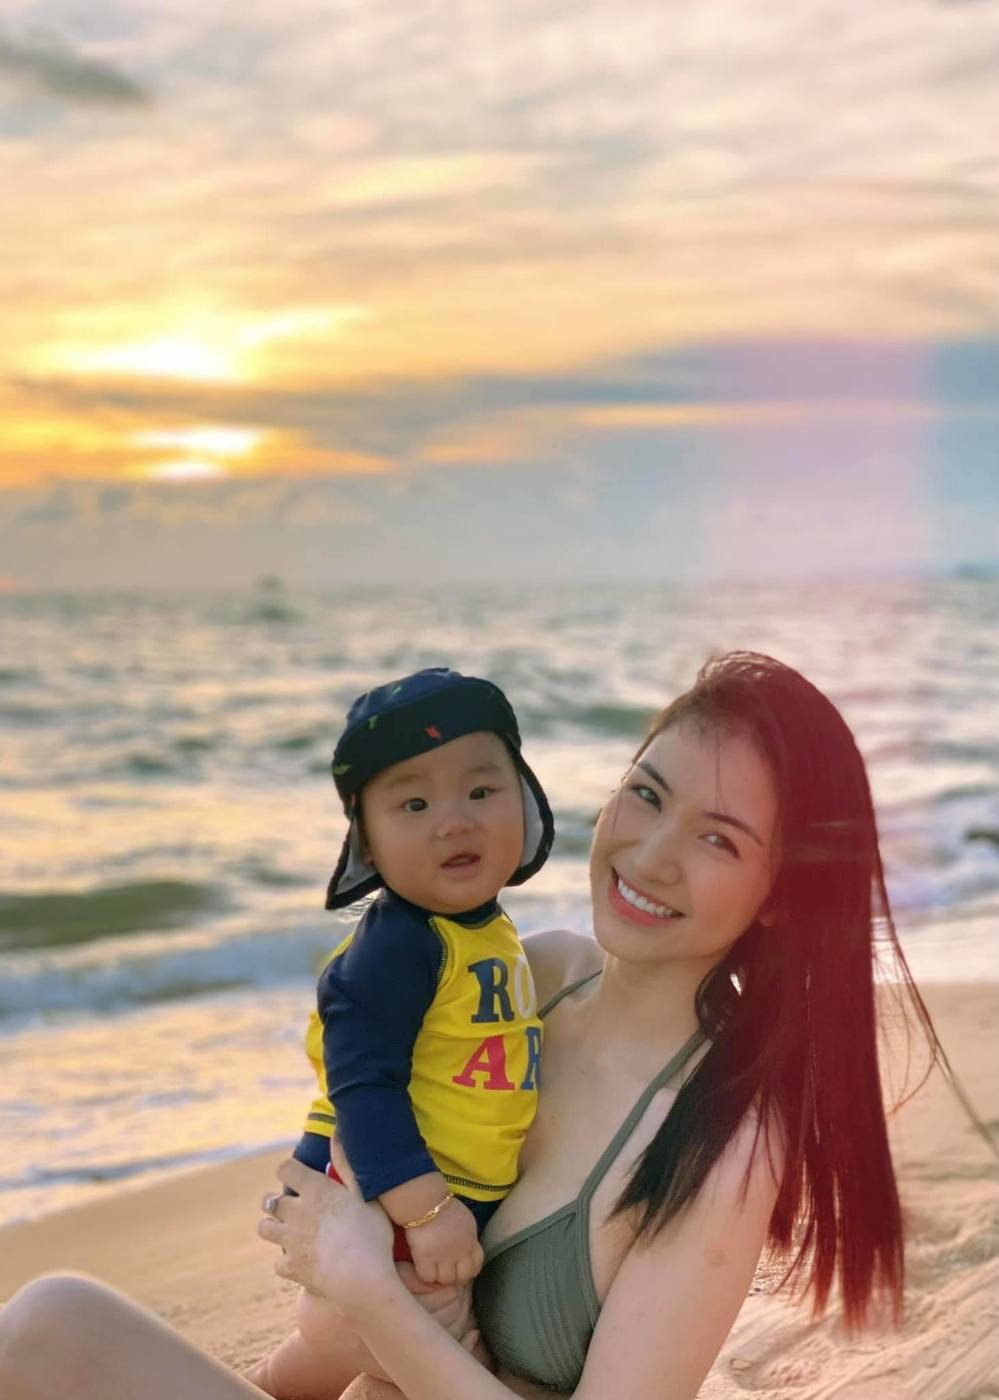  
Hòa Minzy khoe vóc dáng quyến rũ trong bức ảnh đi biển cùng con trai. (Ảnh: FBNV)